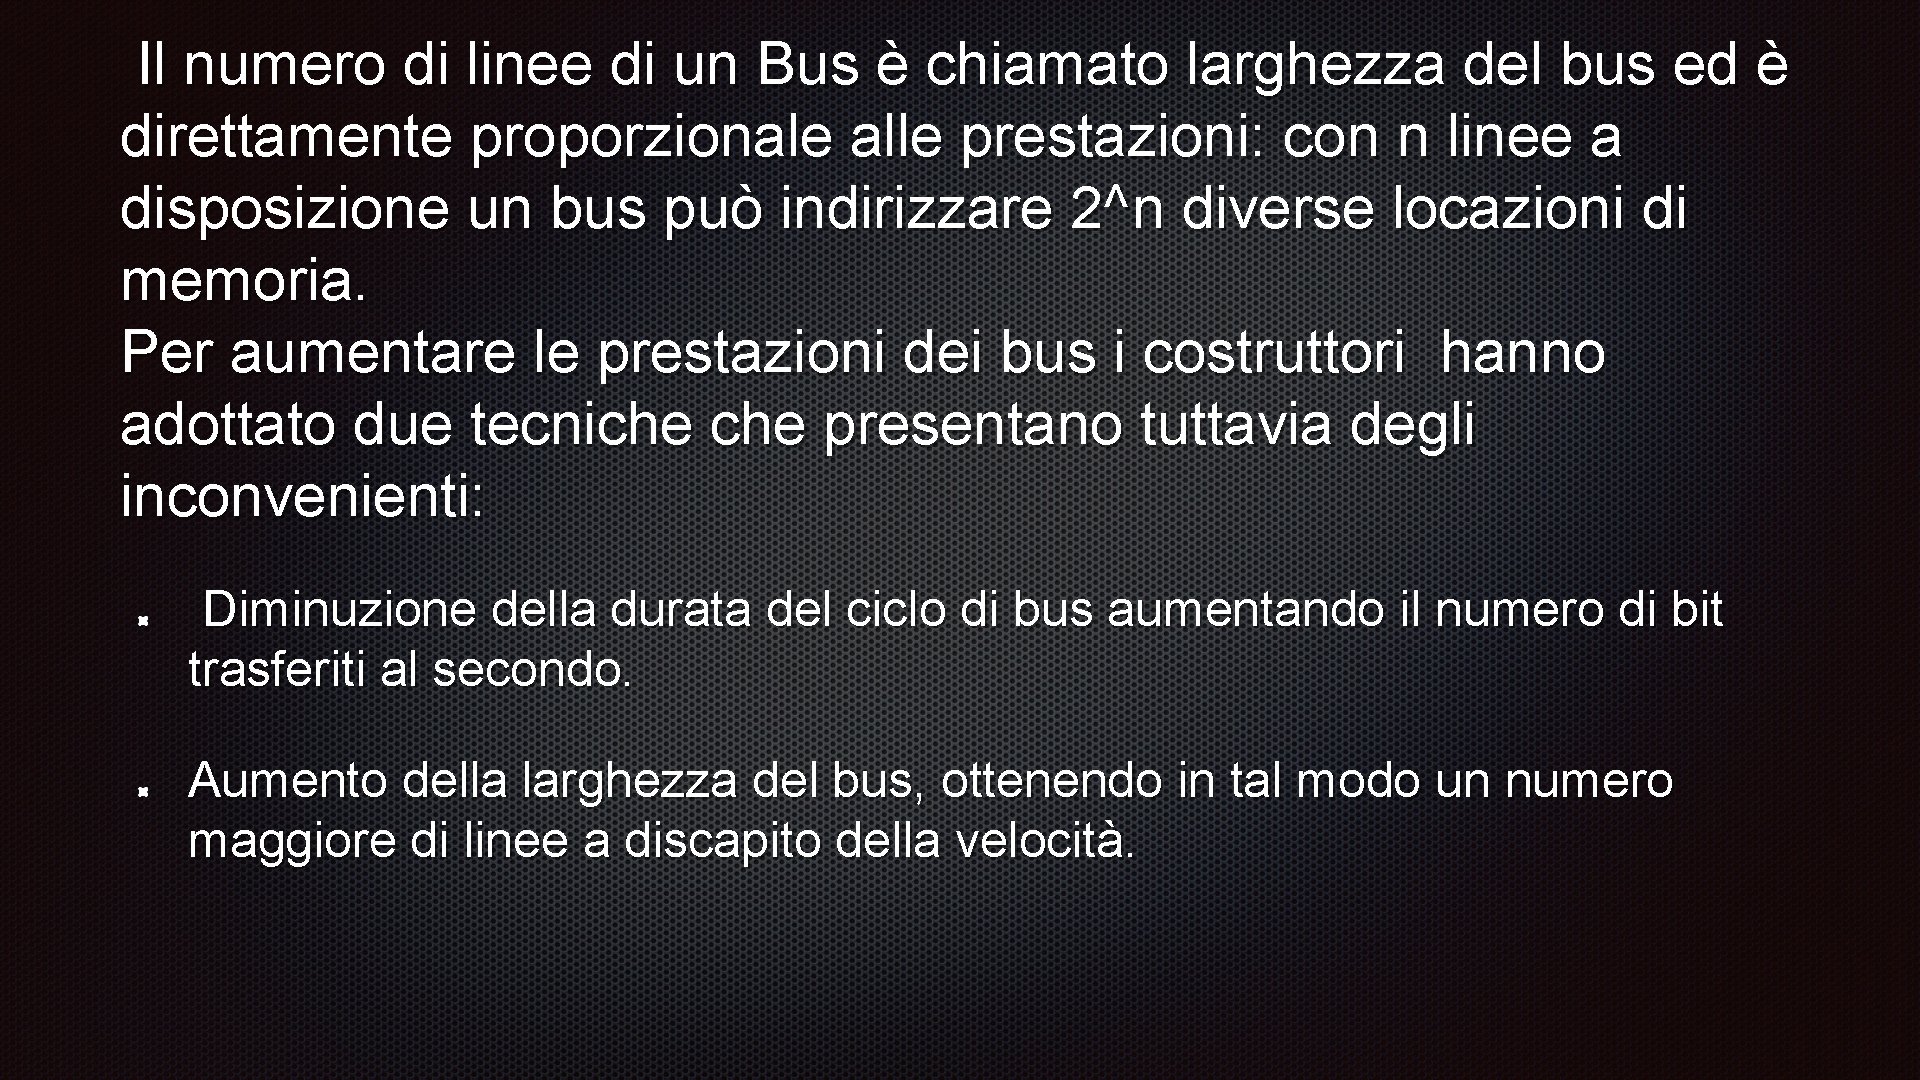 Il numero di linee di un Bus è chiamato larghezza del bus ed è